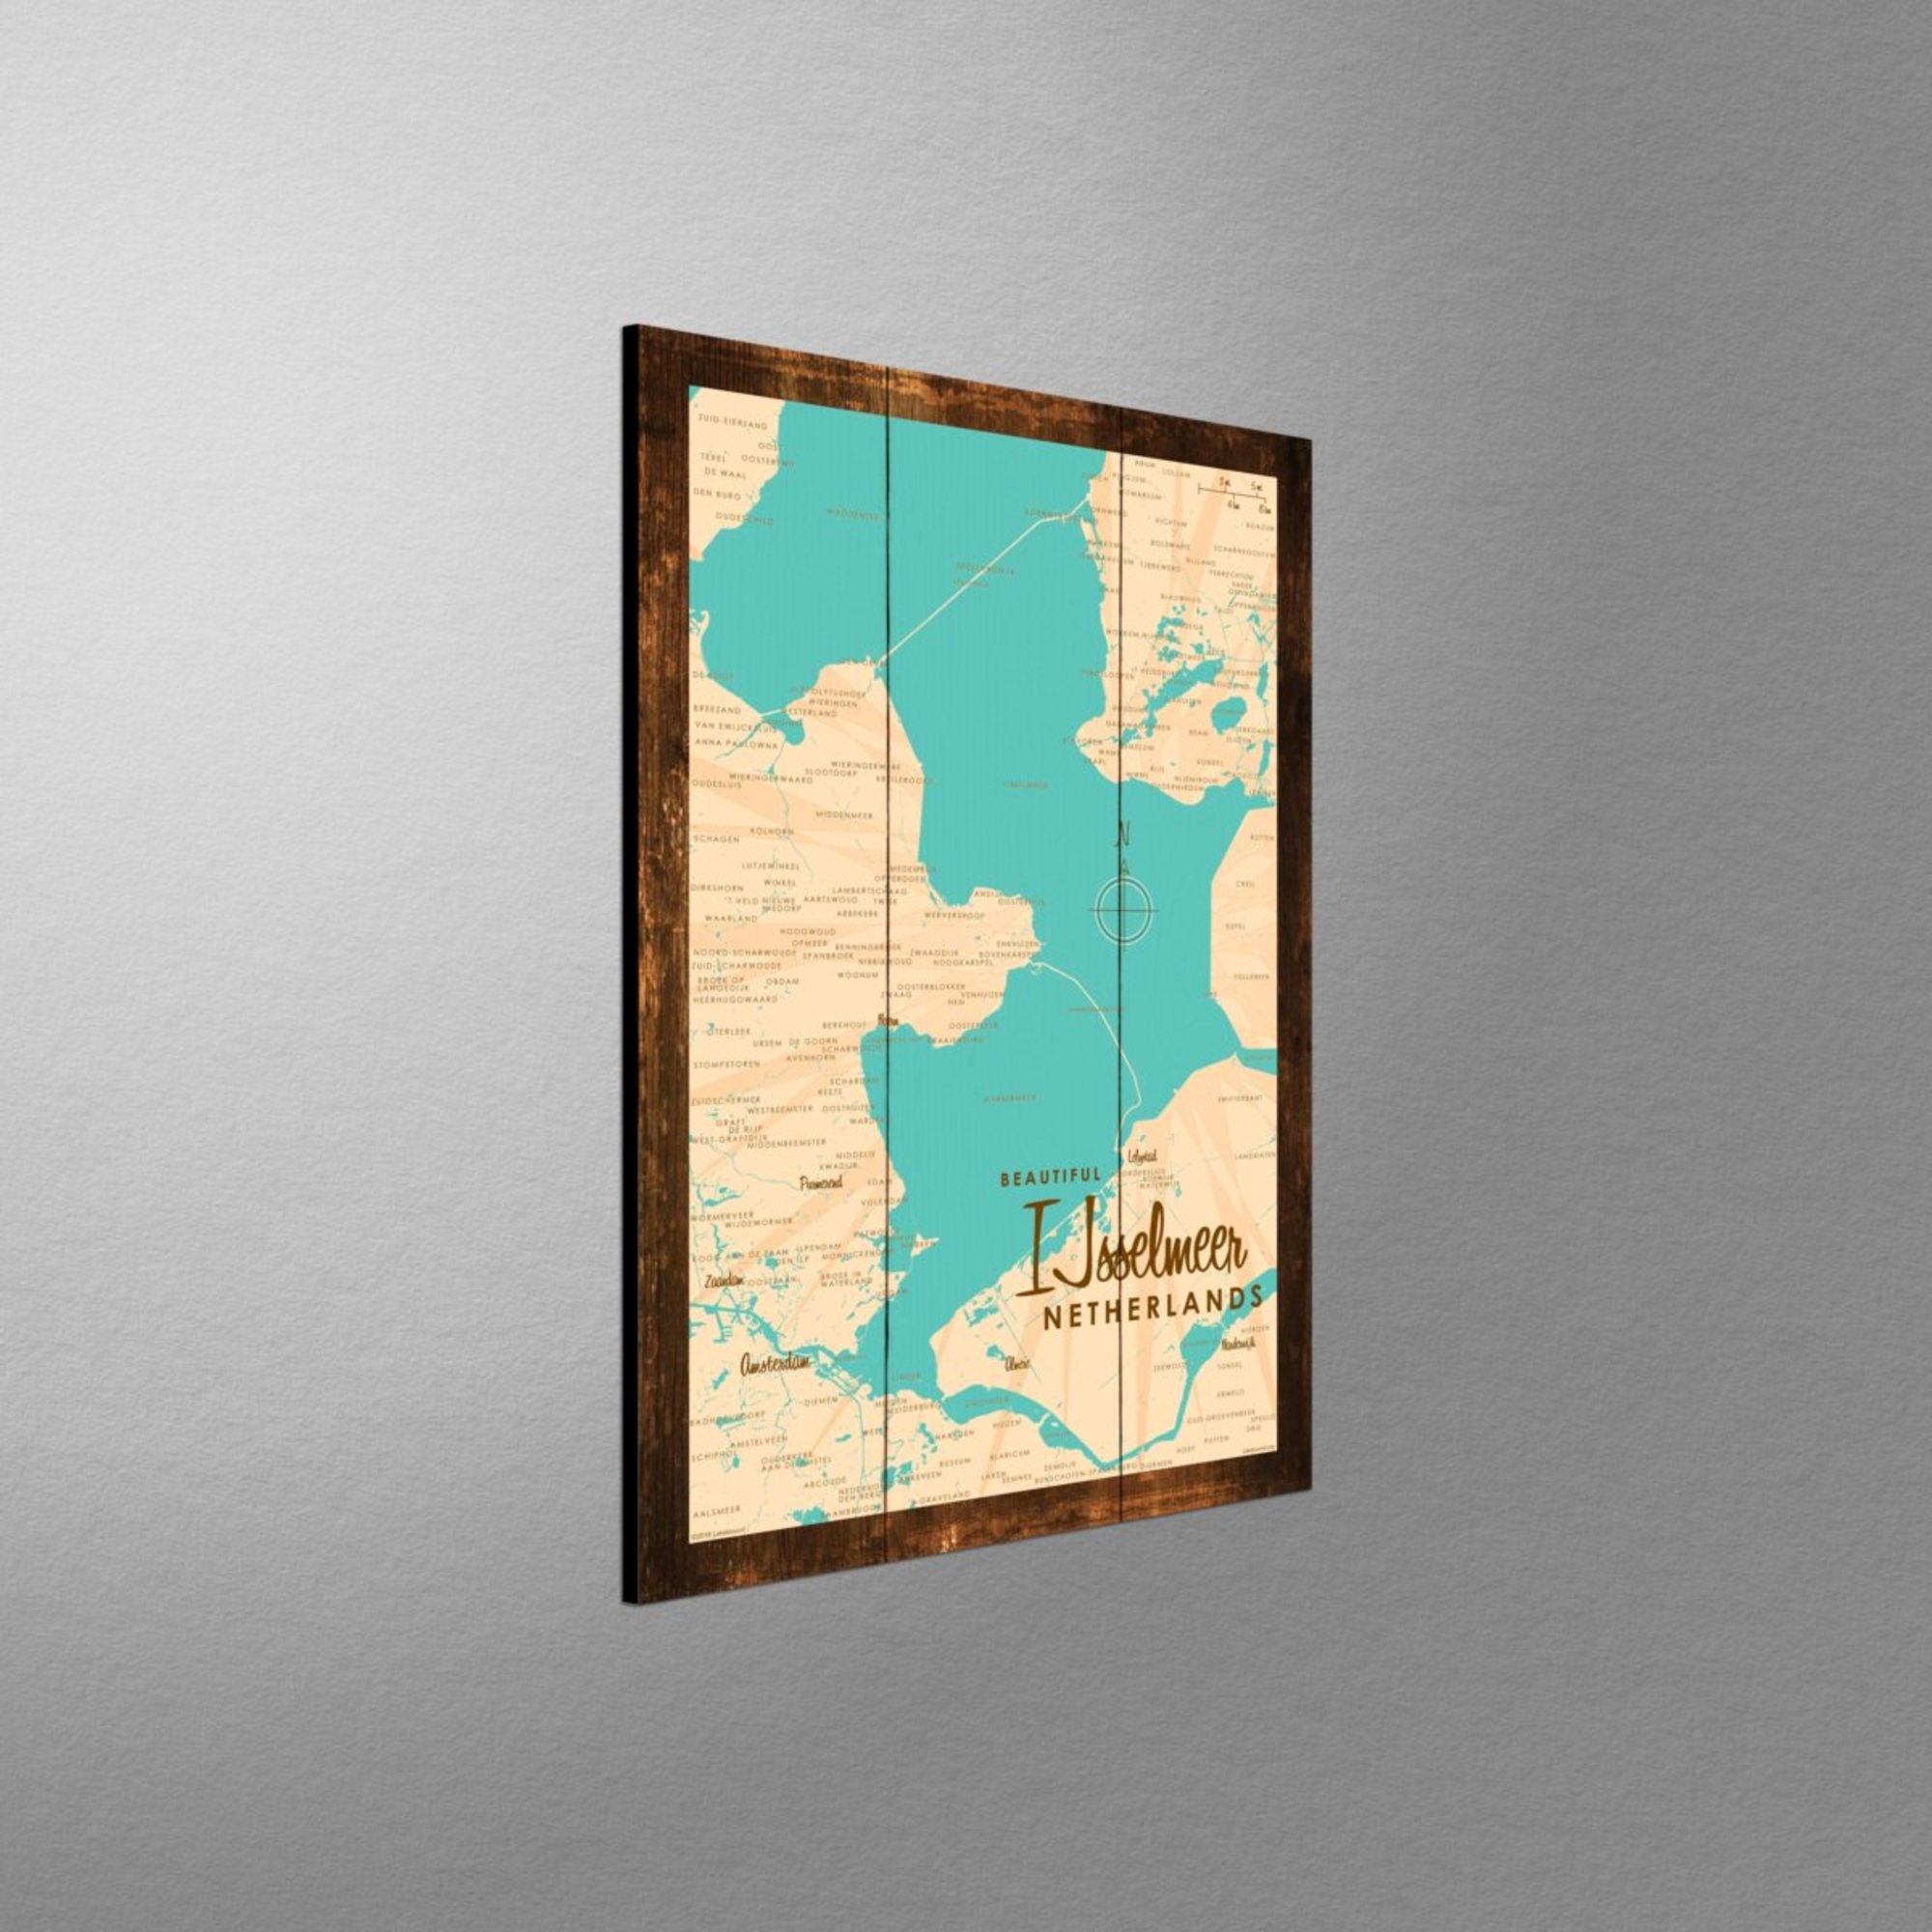 IJsselmeer Netherlands, Rustic Wood Sign Map Art